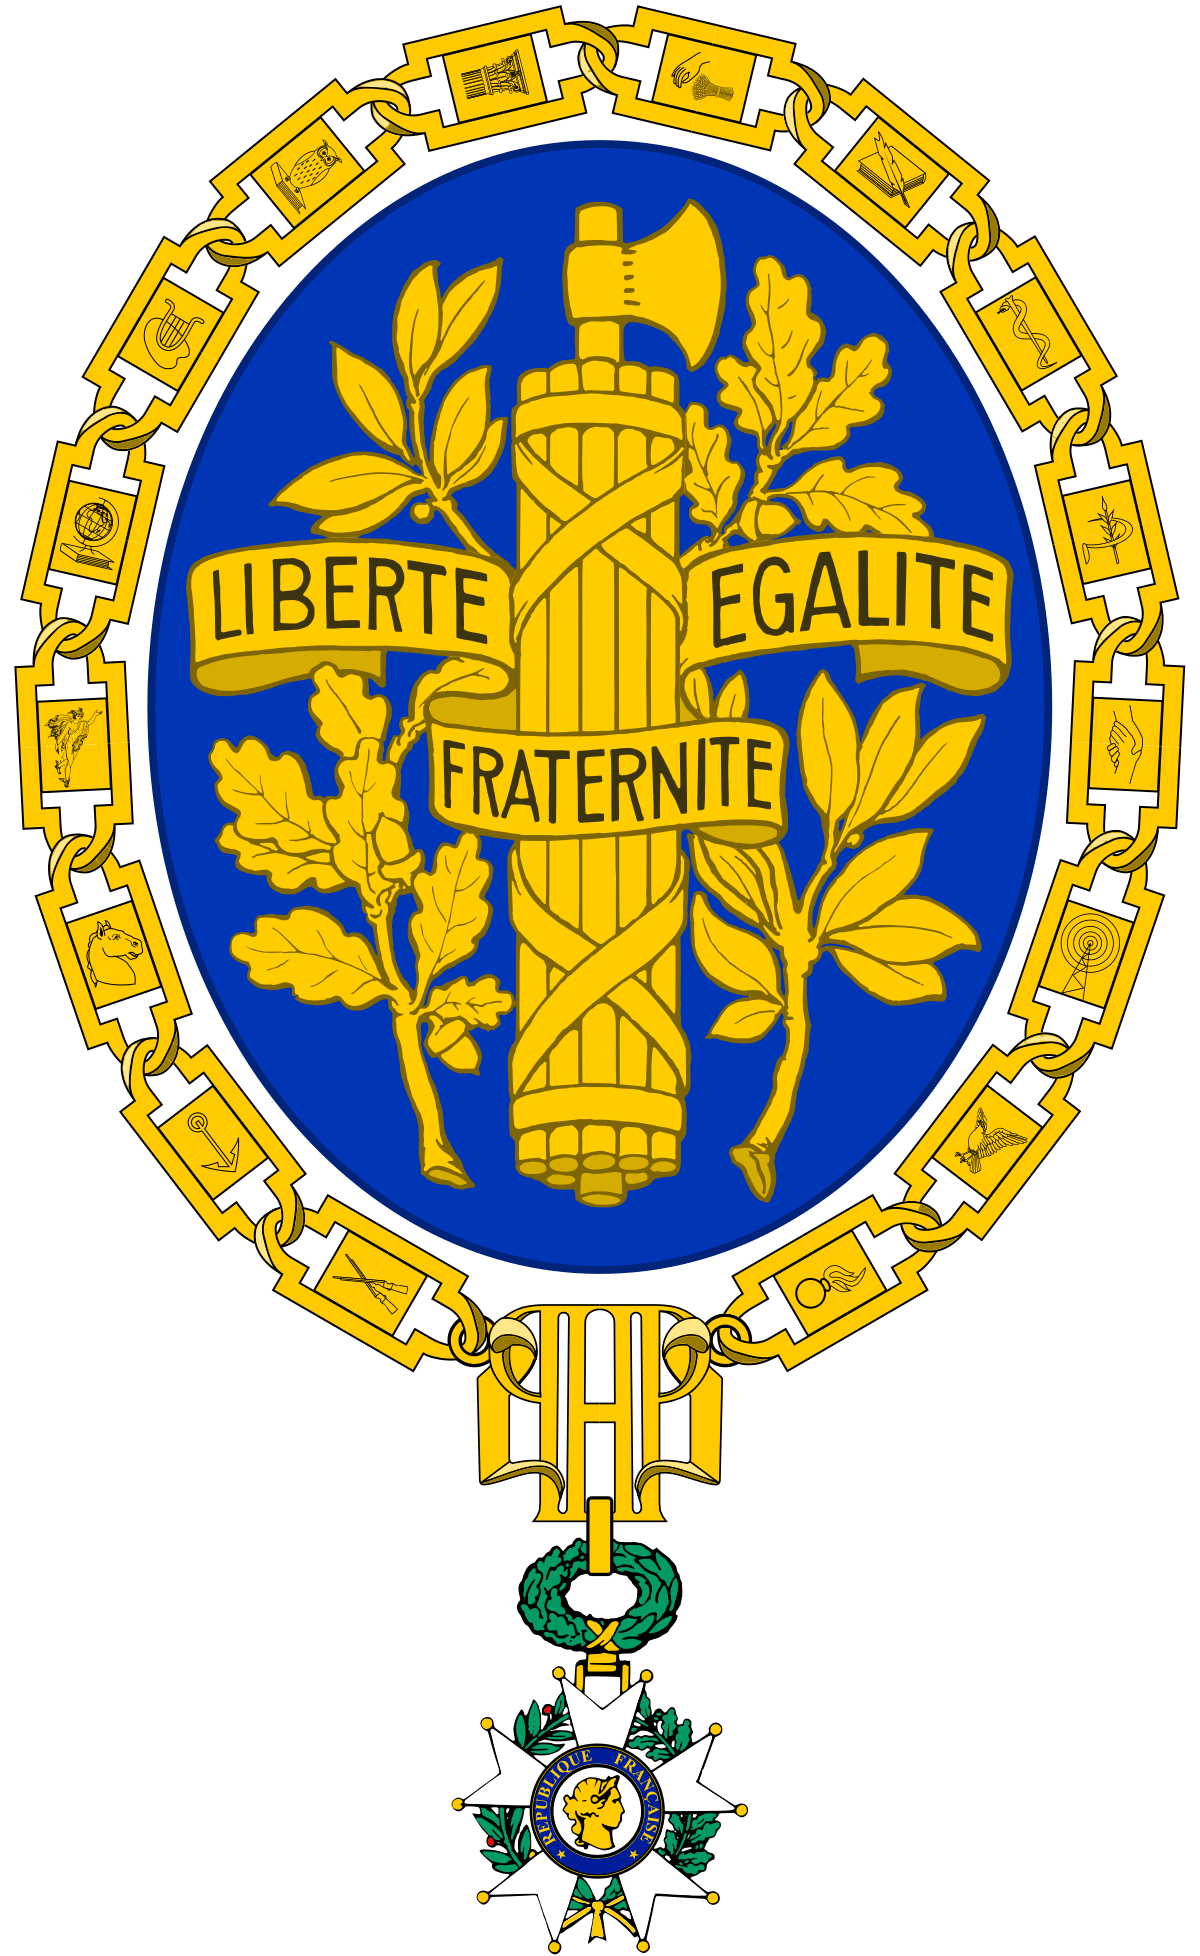 National Logo - National emblem of France